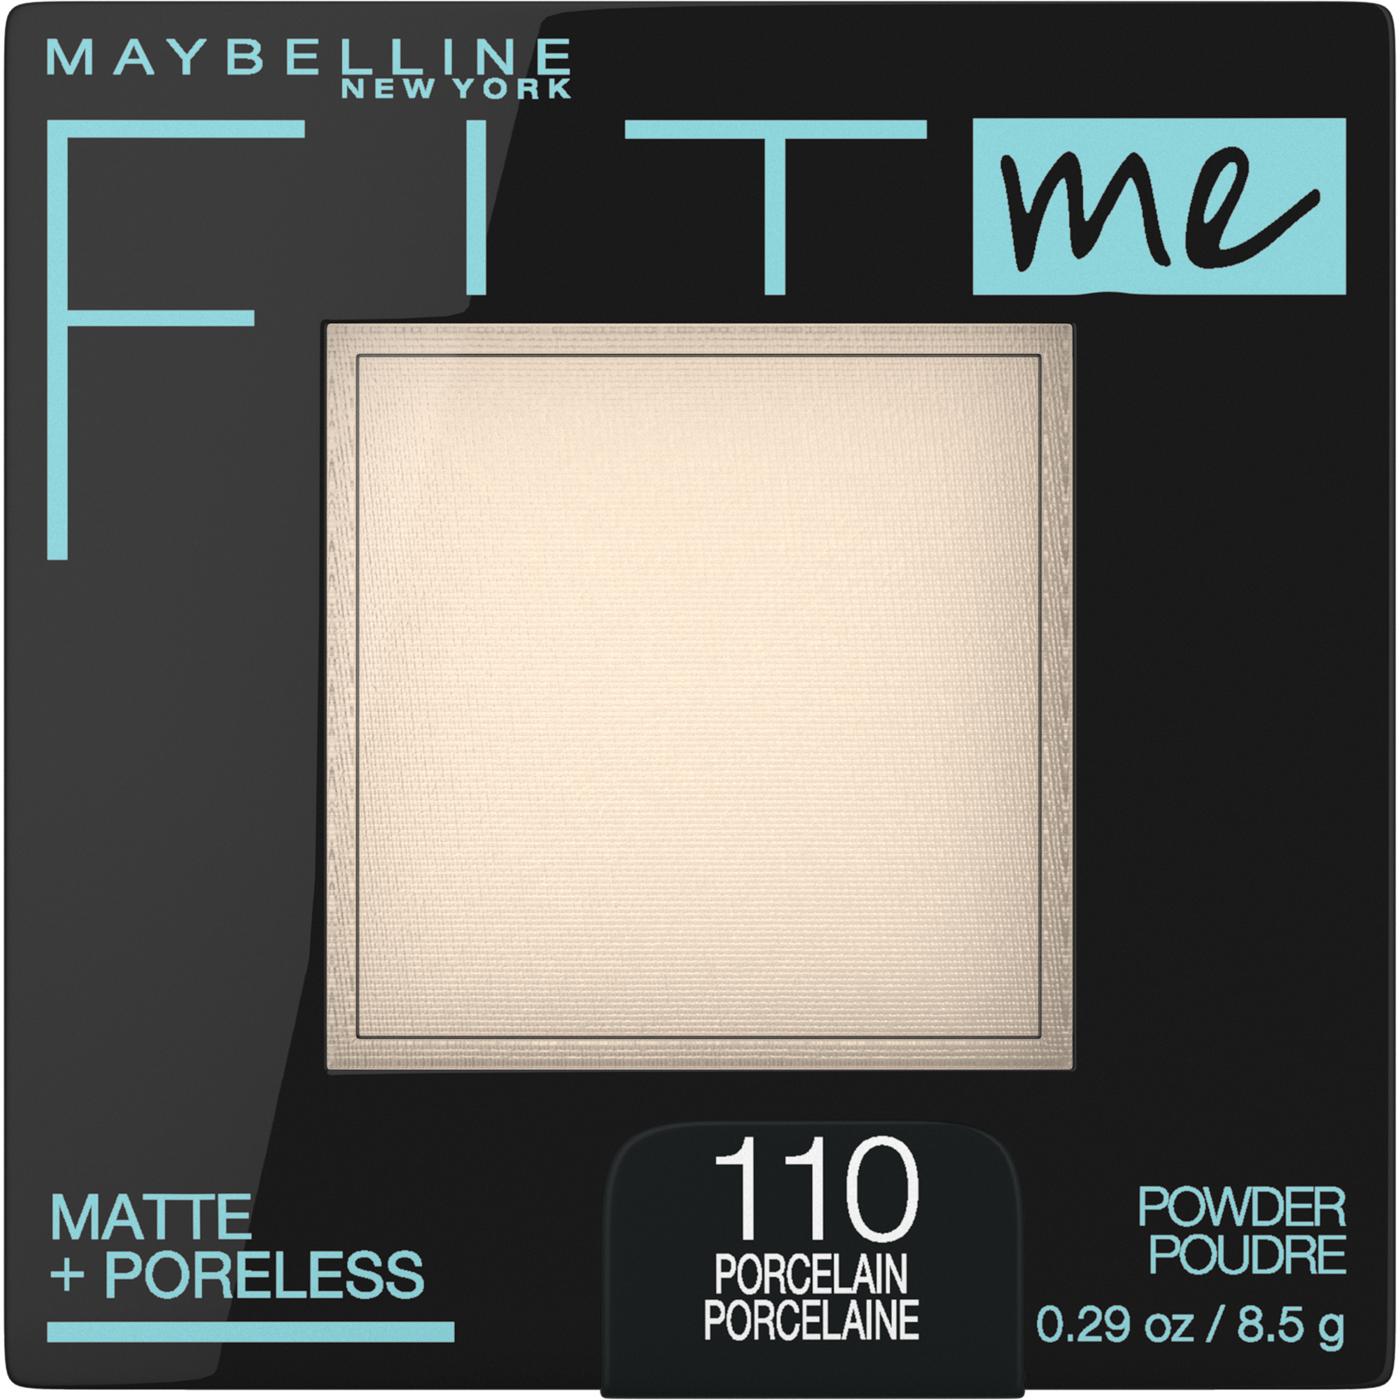 Maybelline Fit Me Matte + Poreless Powder, Porcelain; image 1 of 2